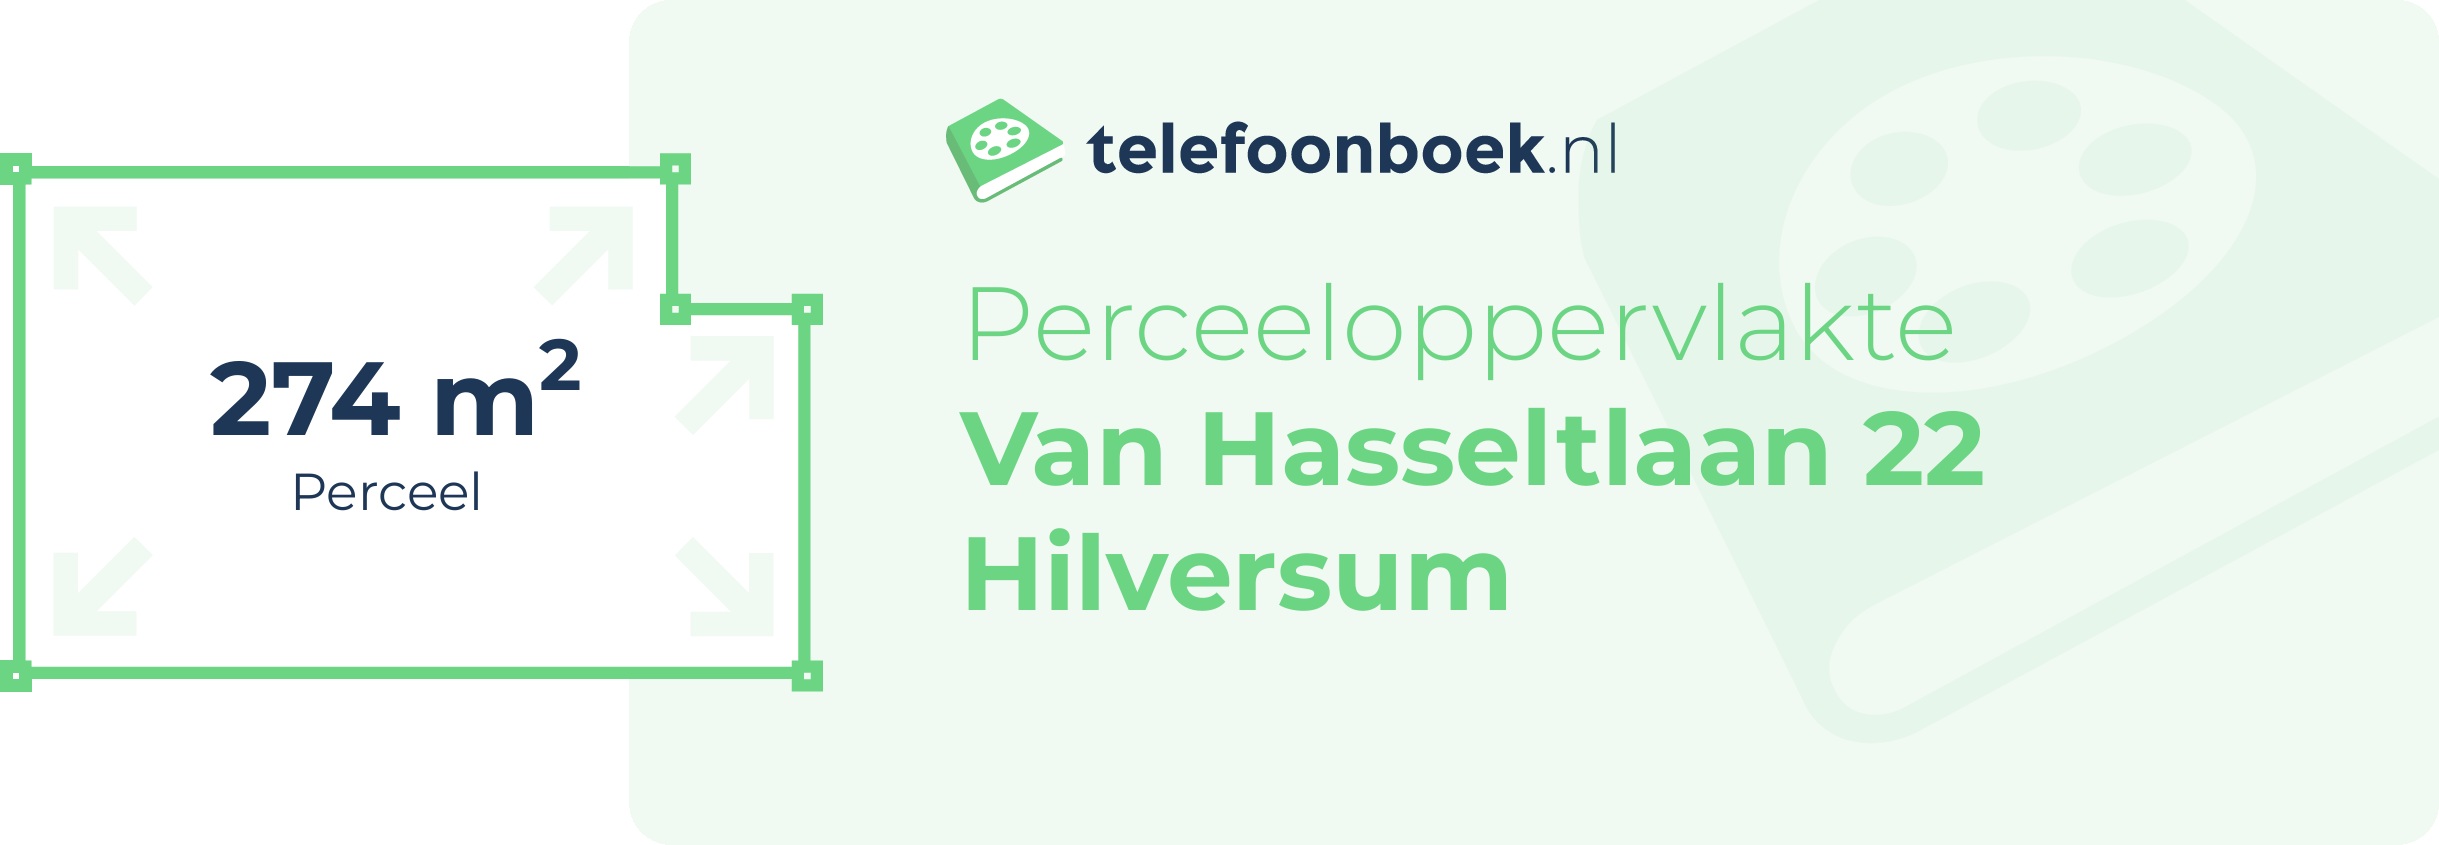 Perceeloppervlakte Van Hasseltlaan 22 Hilversum